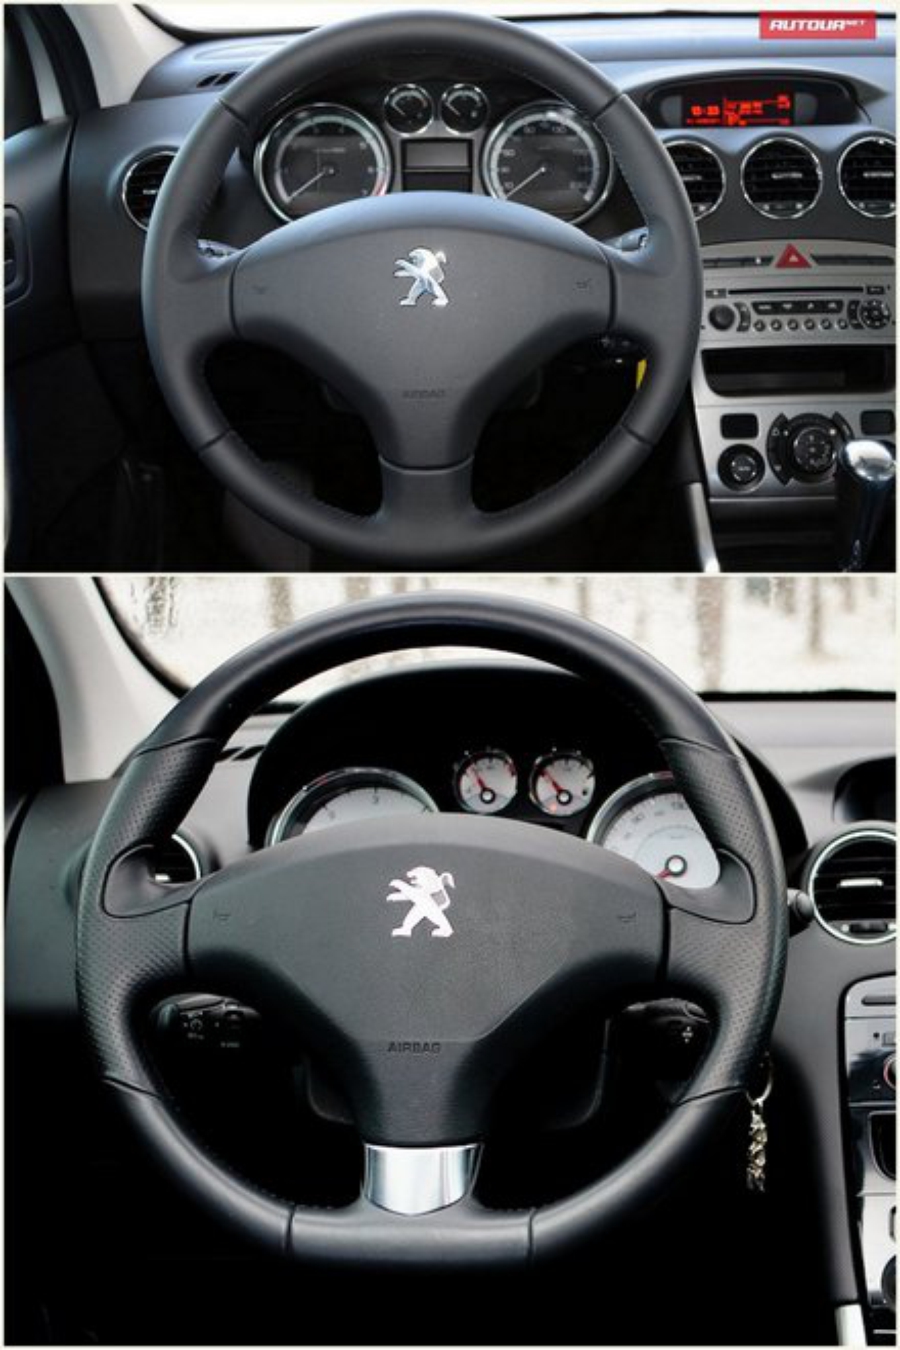 Тест-драйв Peugeot 308 (Пежо 308) интерьер руль